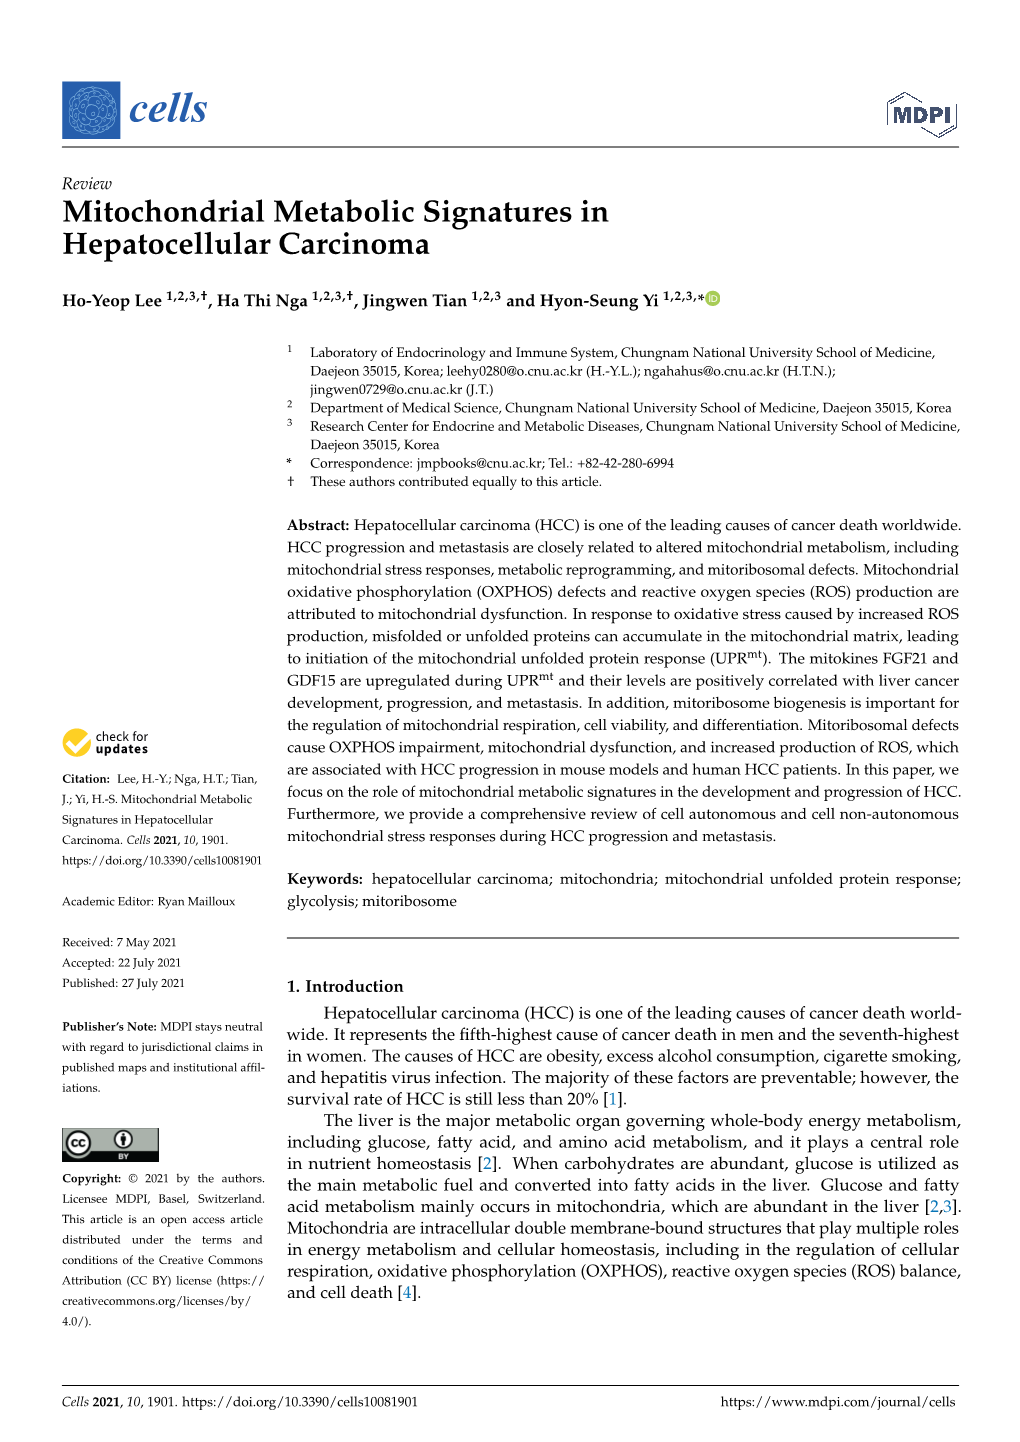 Mitochondrial Metabolic Signatures in Hepatocellular Carcinoma